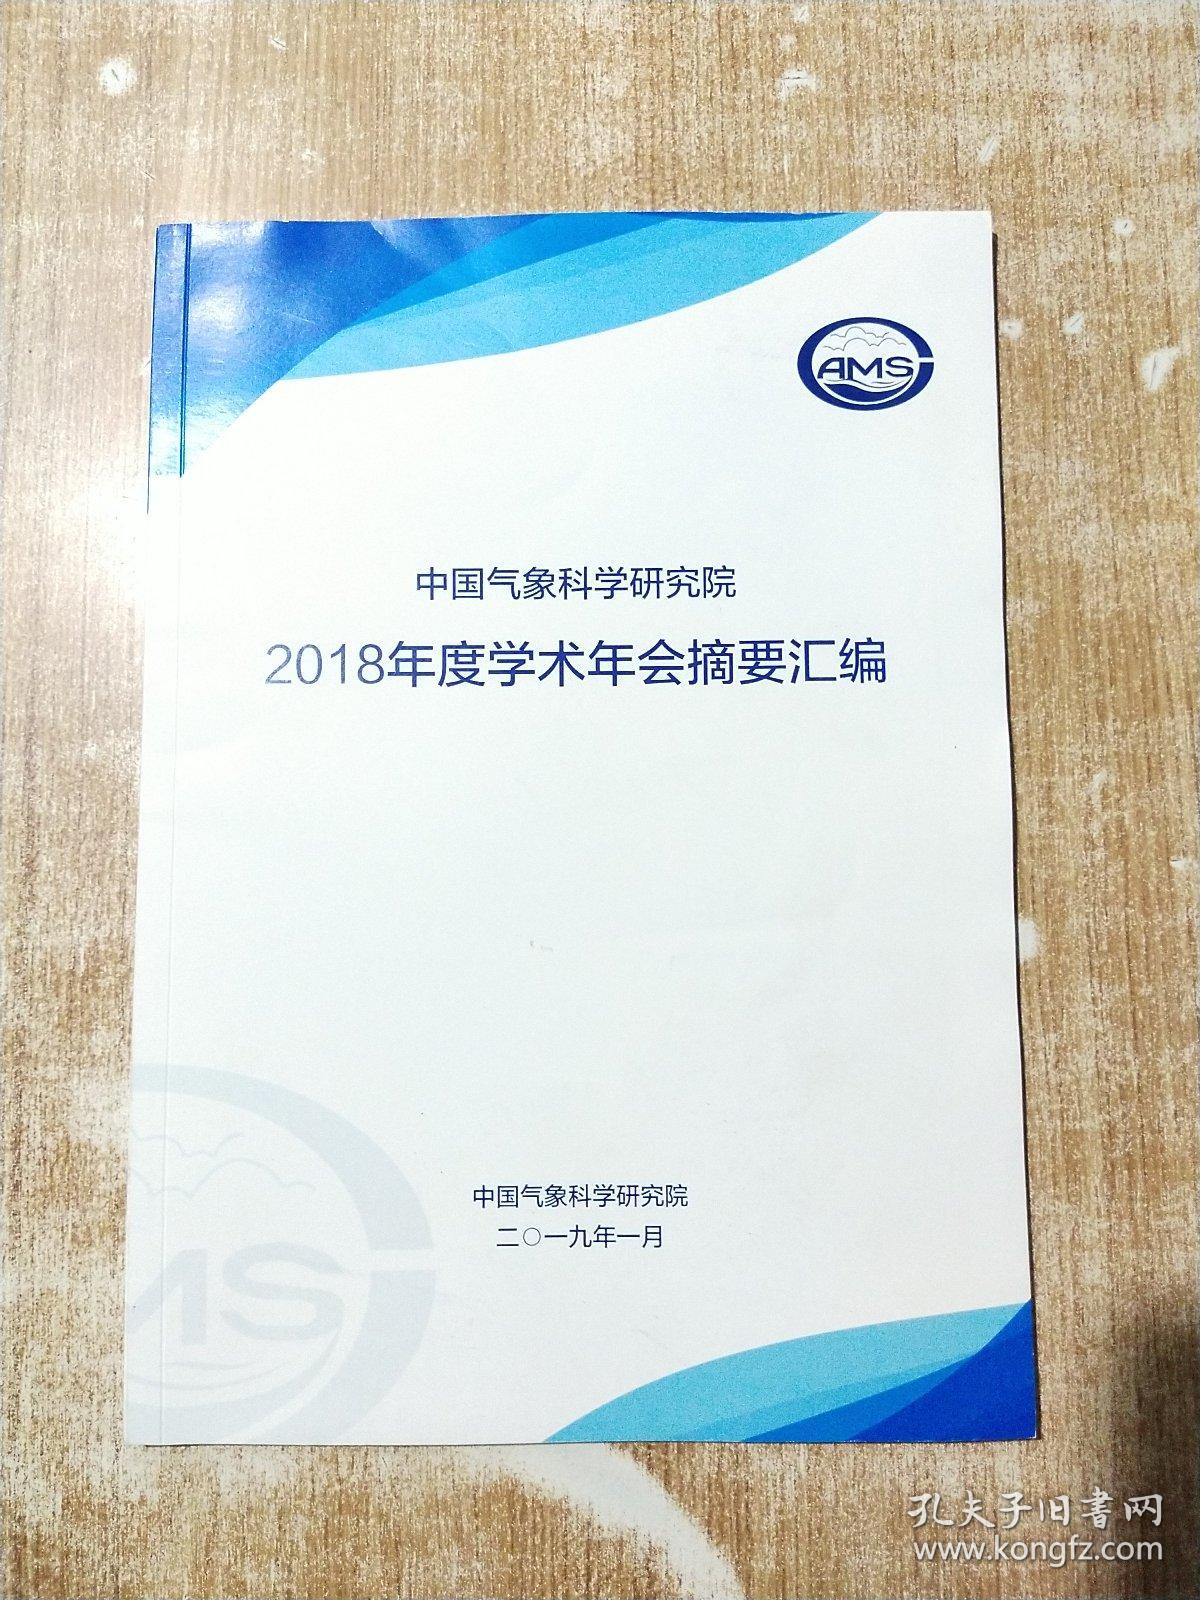 中国气象科学研究院2018年度学术年会摘要汇编